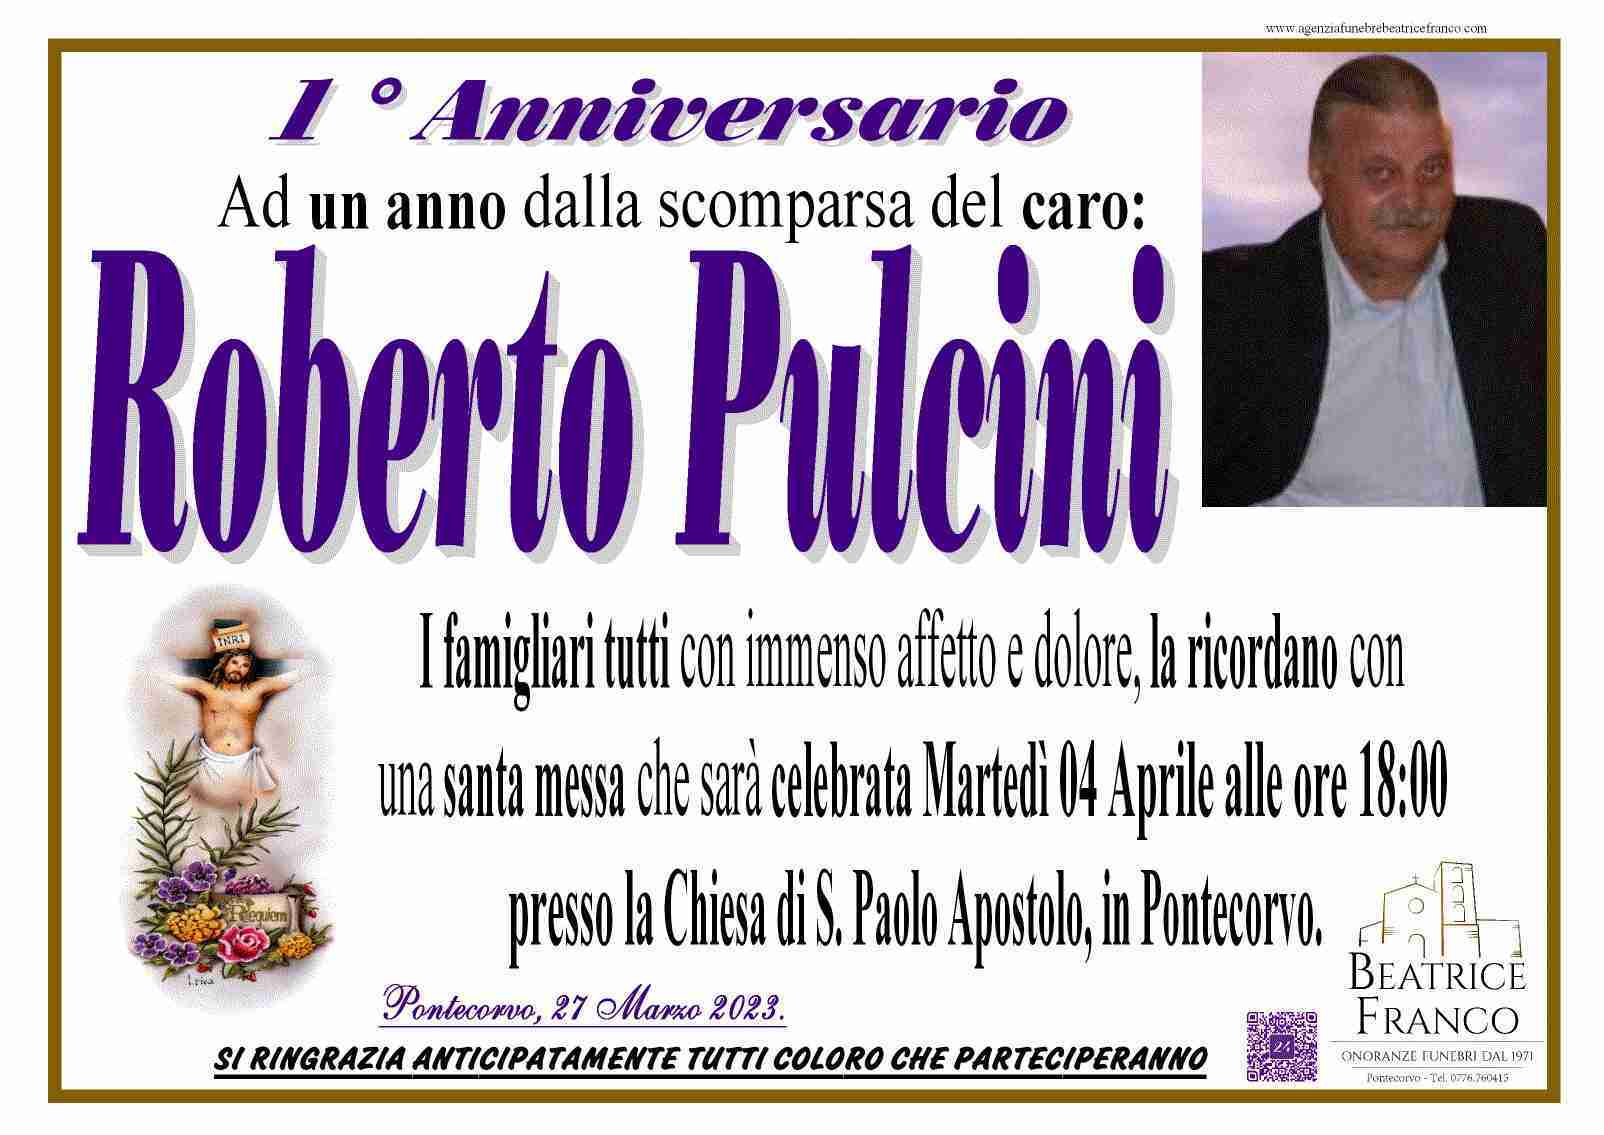 Roberto Pulcini